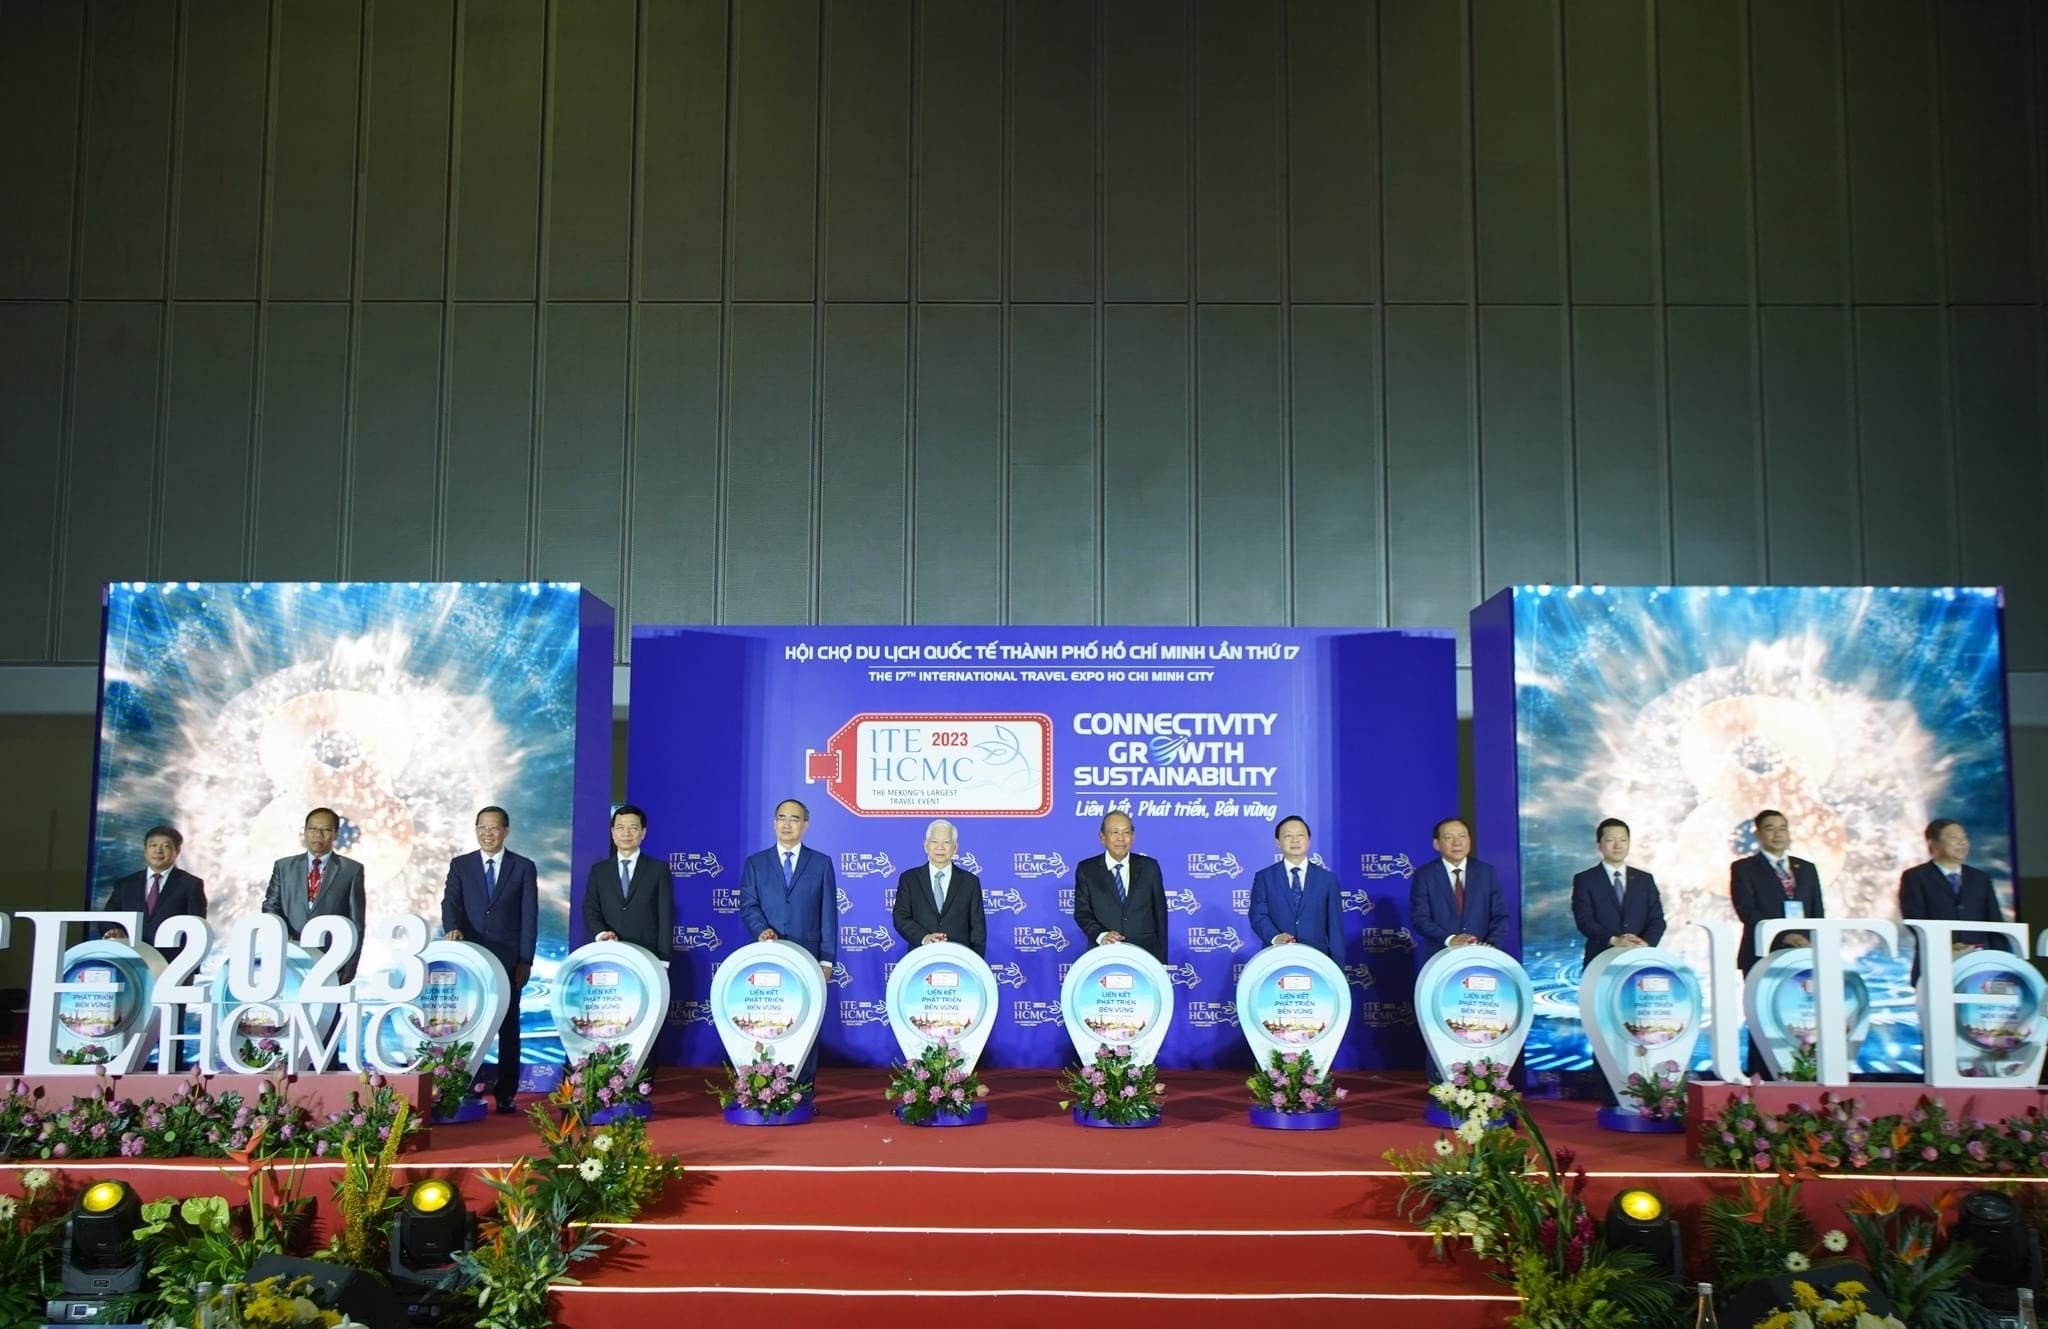 Tỉnh Sơn La tham gia Hội chợ du lịch Quốc tế  Thành phố Hồ Chí Minh lần thứ 17 năm 2023 (ITE HCMC 2023)